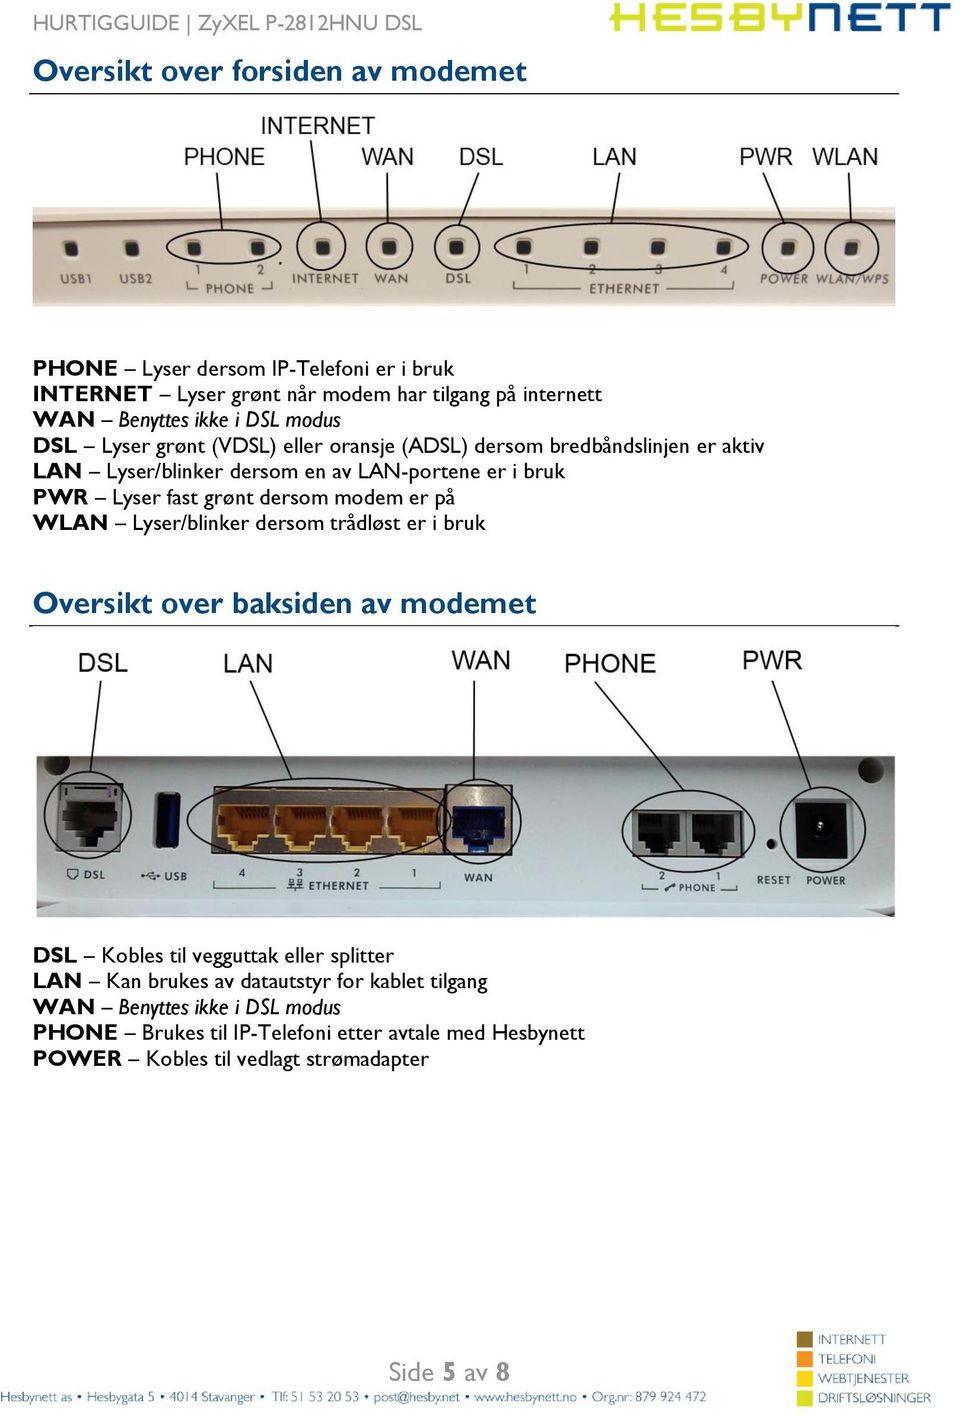 dersom modem er på WLAN Lyser/blinker dersom trådløst er i bruk Oversikt over baksiden av modemet DSL Kobles til vegguttak eller splitter LAN Kan brukes av